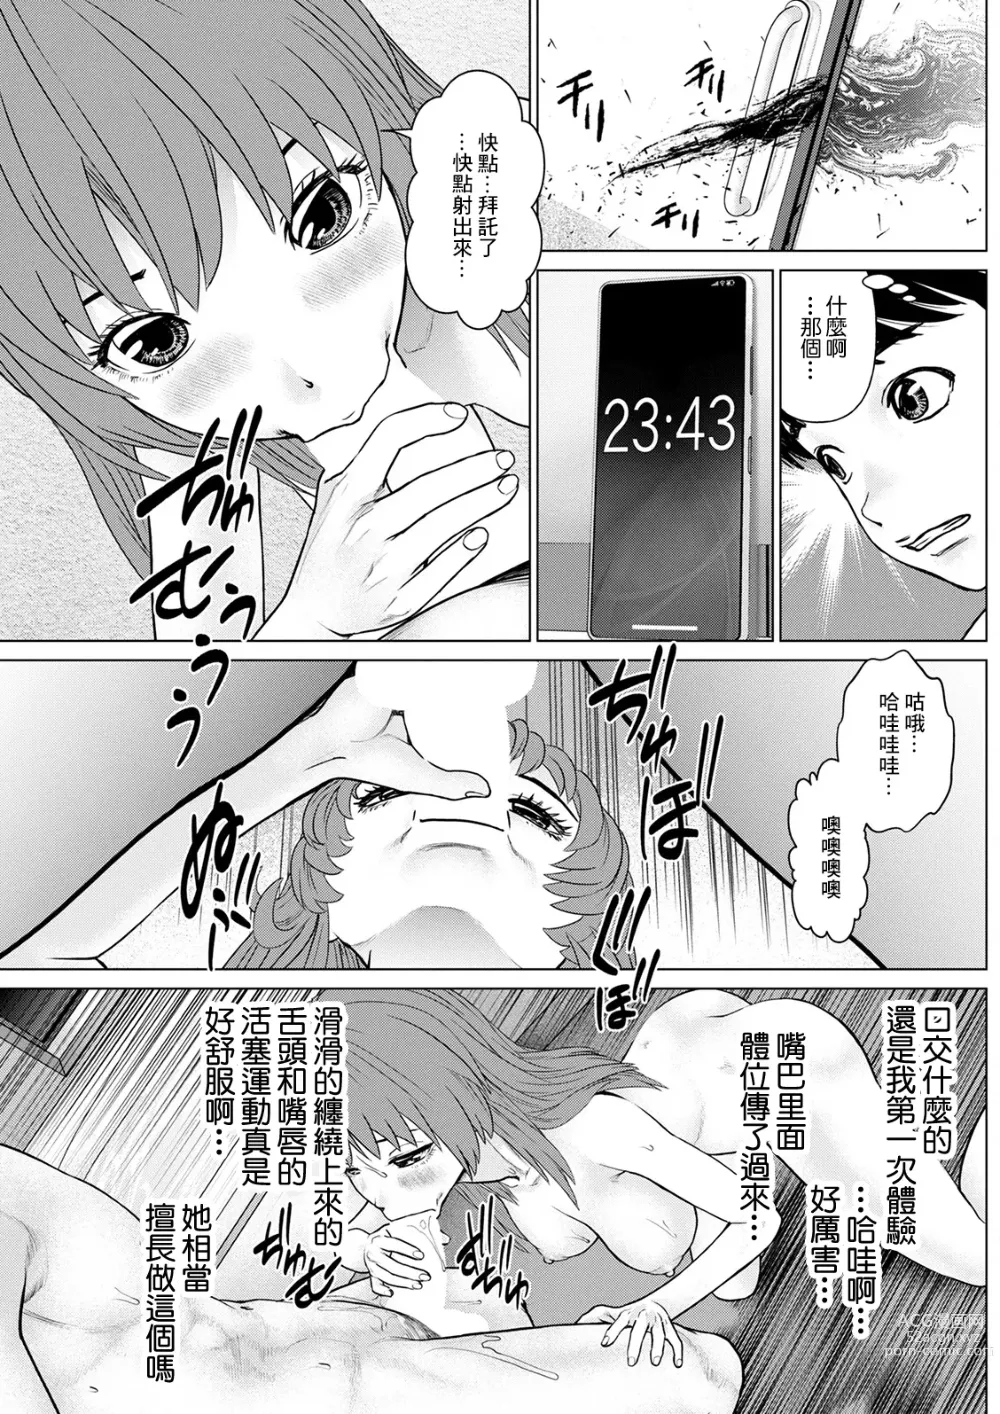 Page 13 of manga Gozen Reiji ni Dakishimete Daiikkai: Yabai Onna ni Karamareta to Omottara Ii Omoi ga Dekita Ken